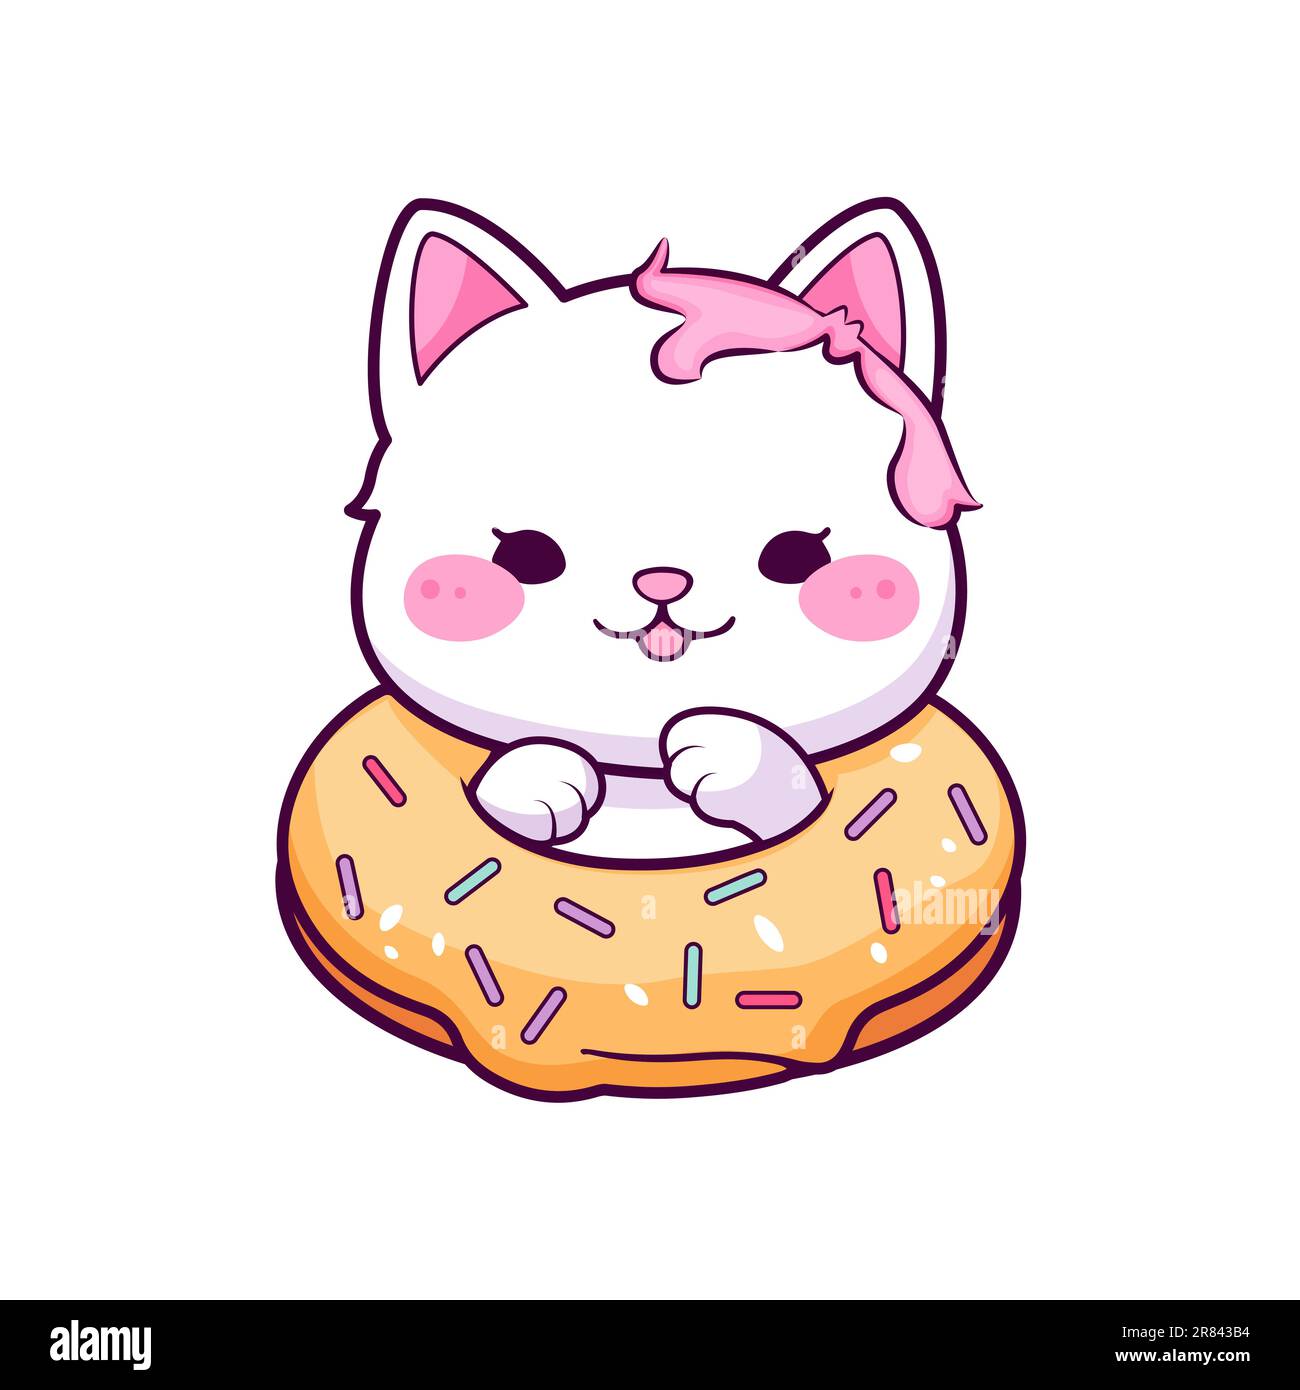 Cutebaby kitten with donut. Kids illustration. Stock Vector